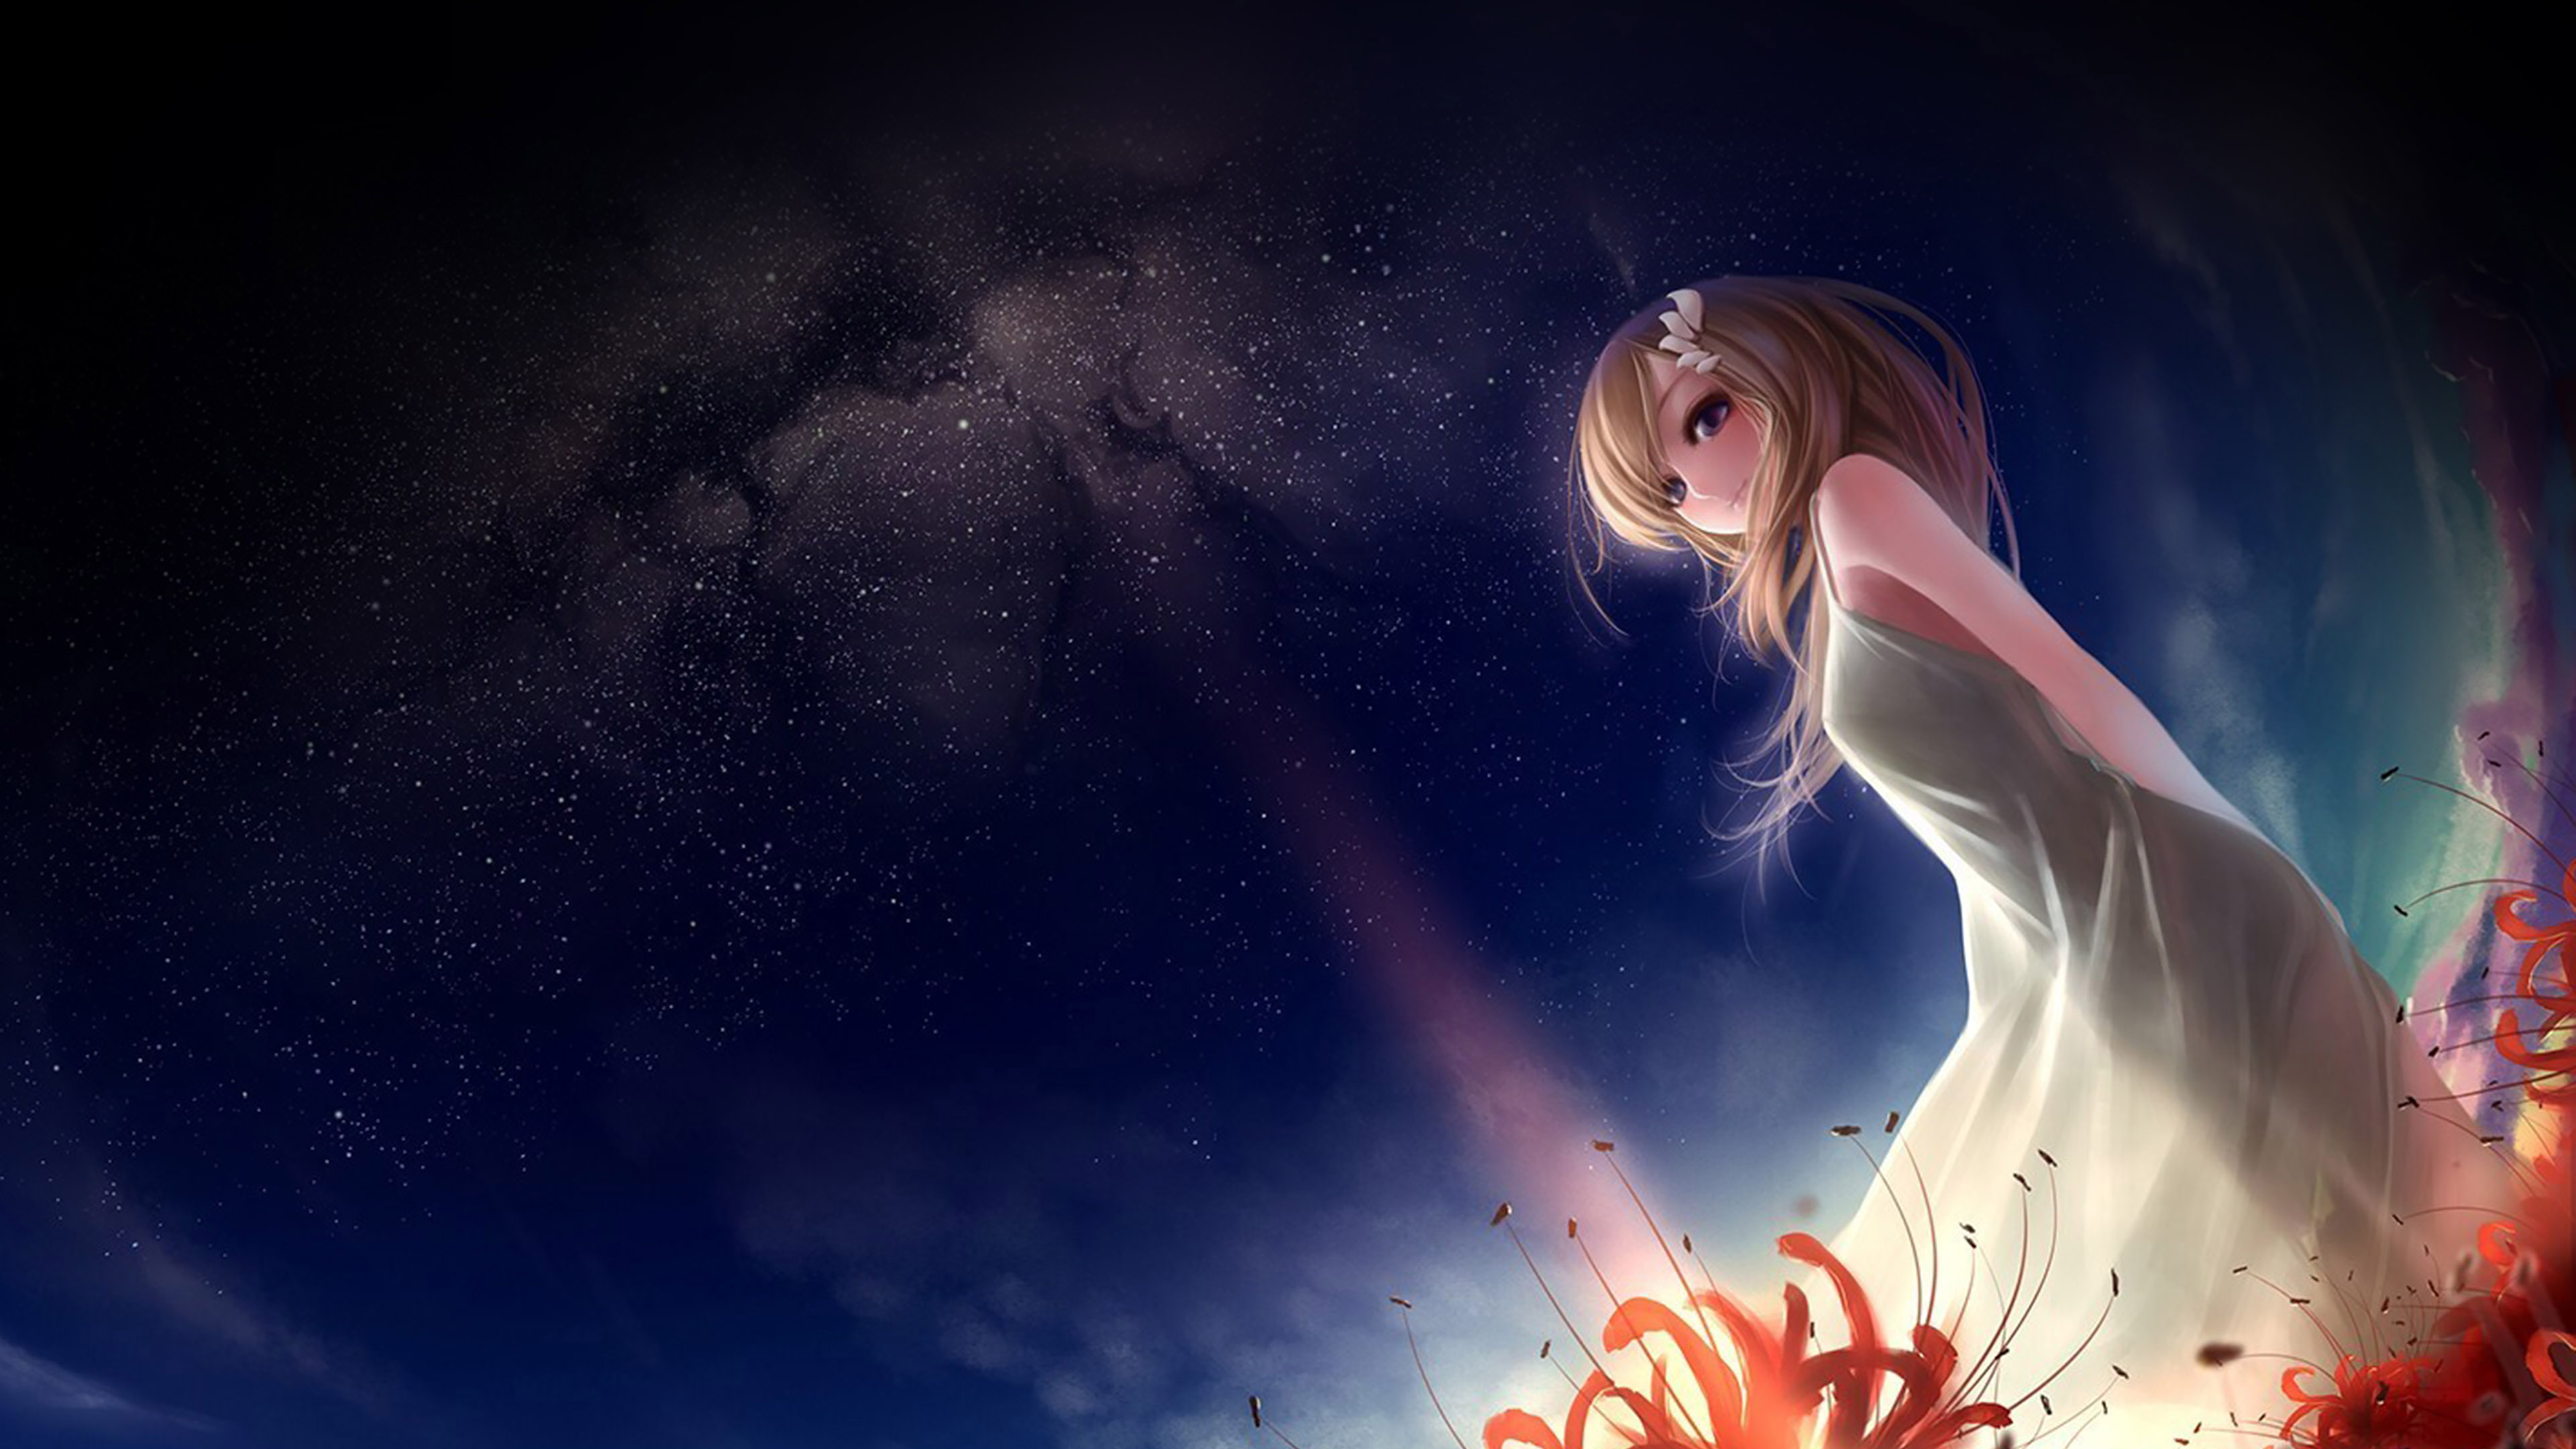 anime girl wallpaper,sky,cg artwork,light,beauty,atmosphere